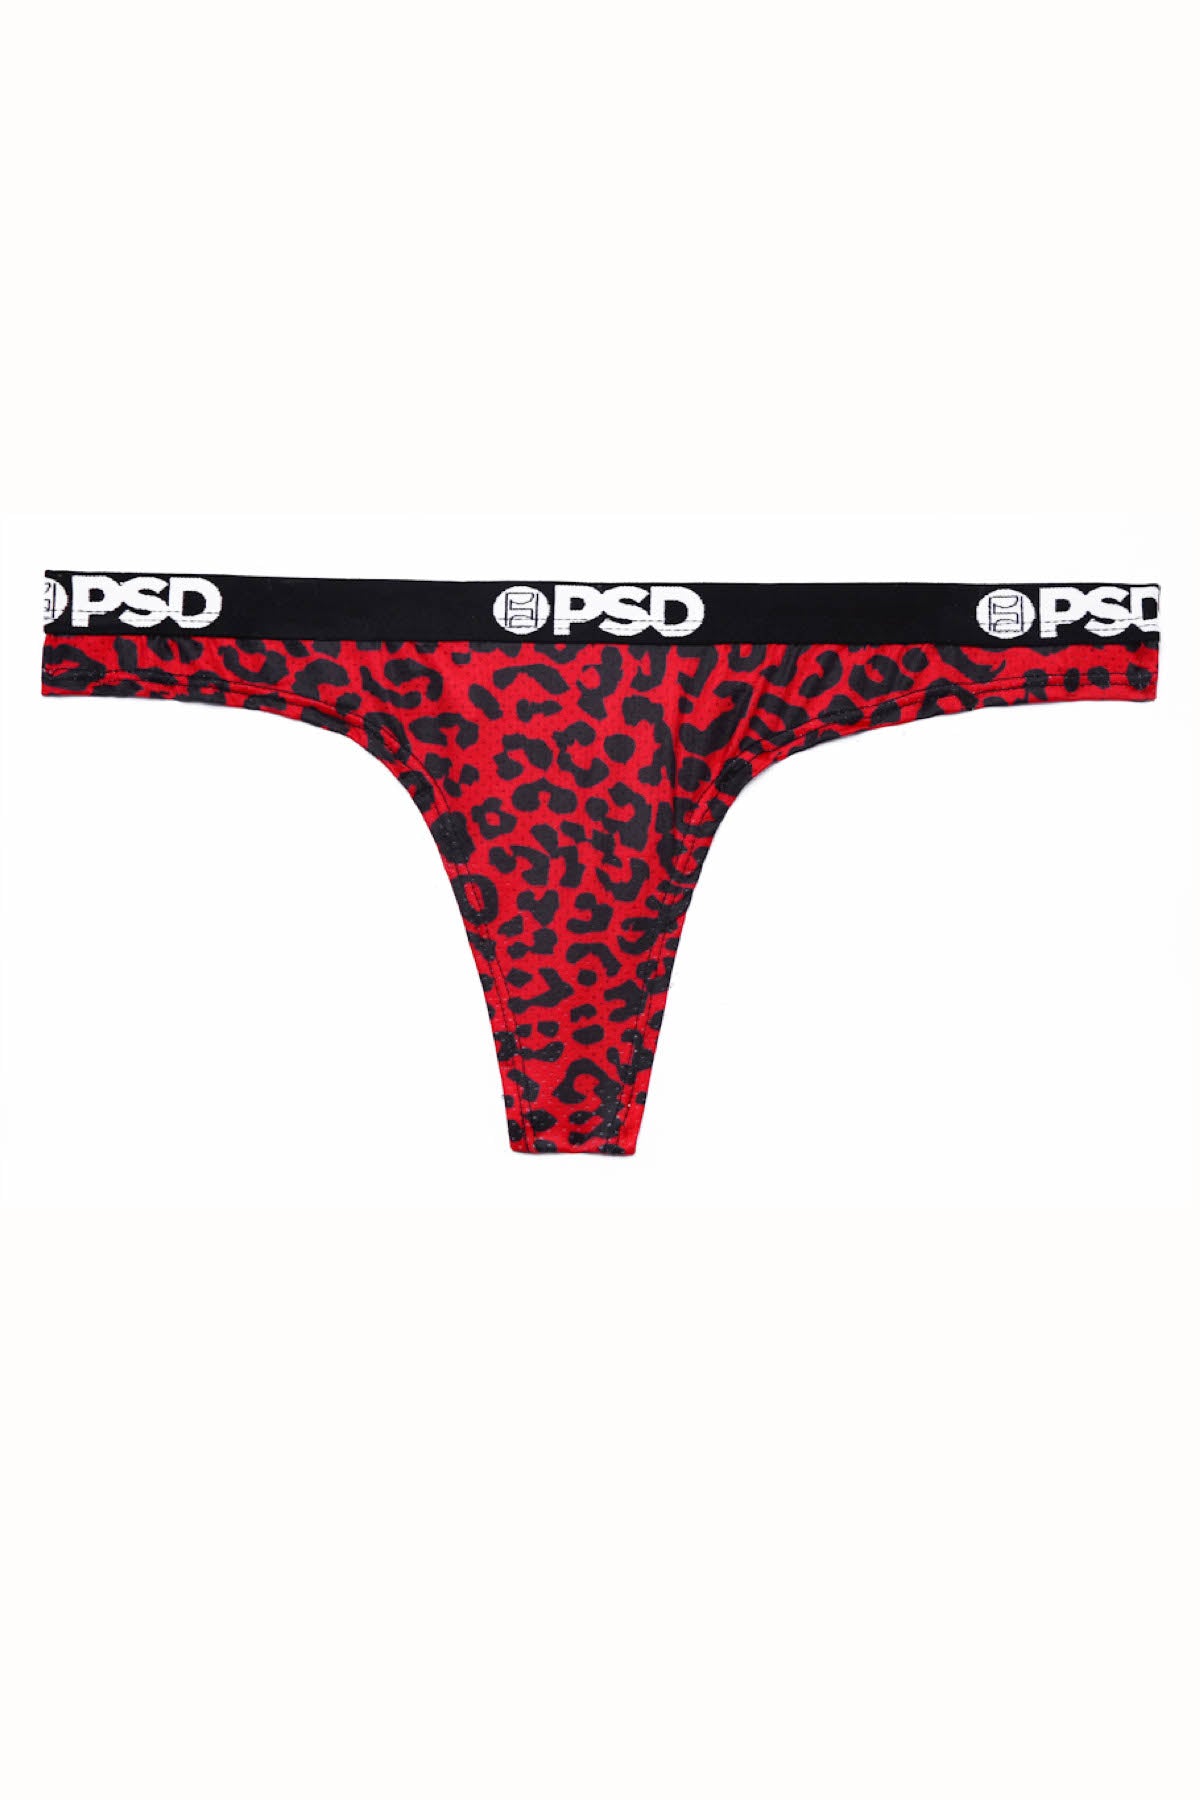 PSD Red Cheetah Thong – CheapUndies